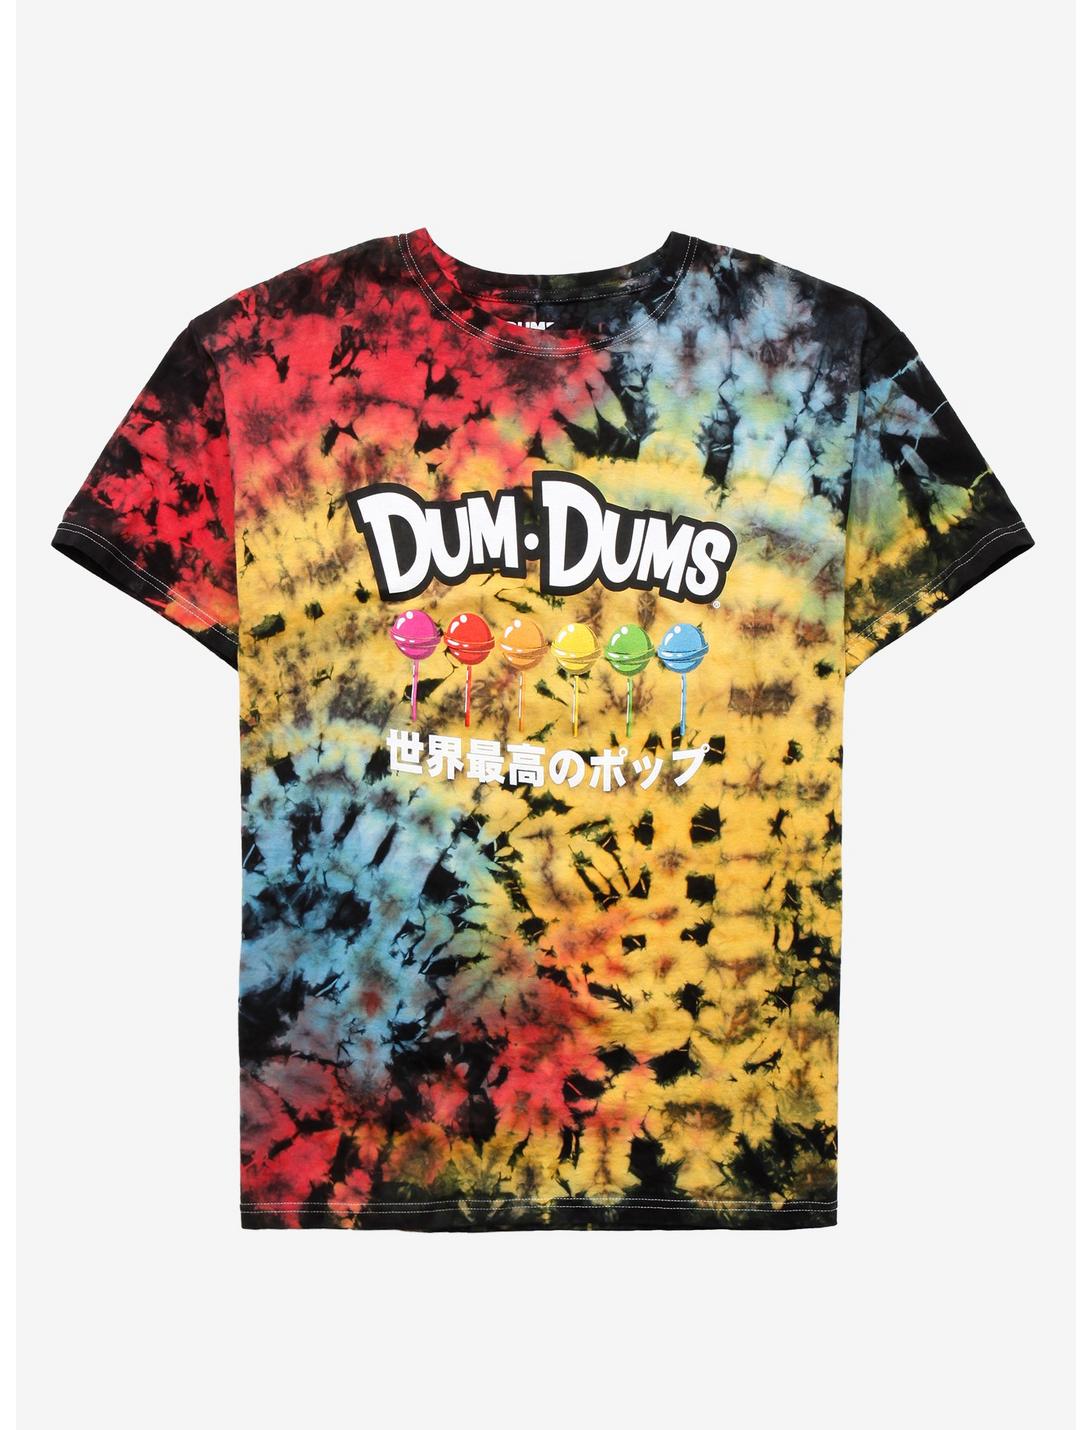 Dum Dums Lollipops Tie-Dye T-Shirt, MULTI, hi-res